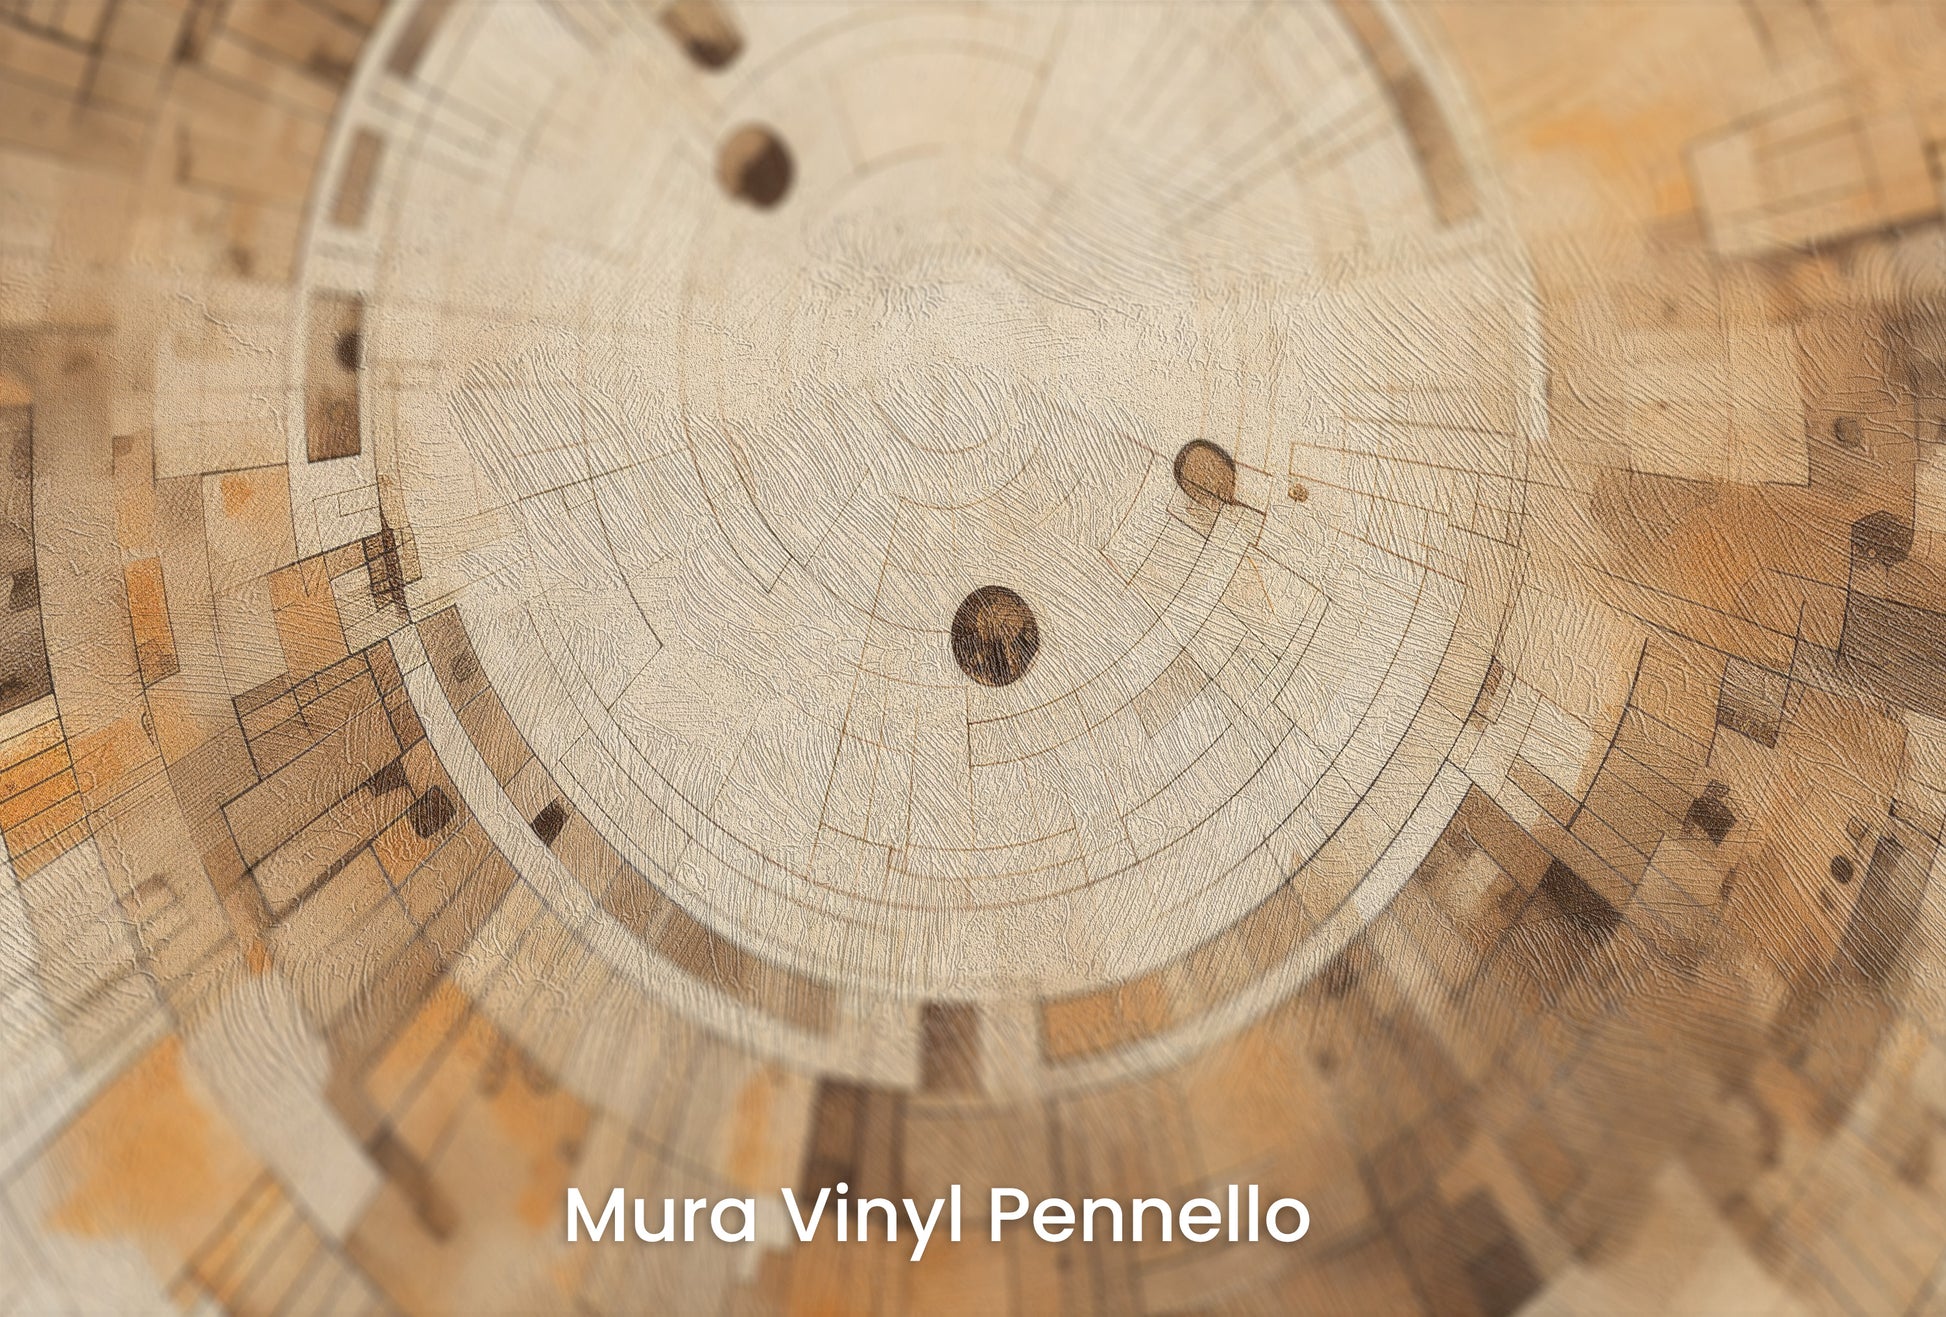 Zbliżenie na artystyczną fototapetę o nazwie PIXELATED VORTEX IN EARTHEN TONES na podłożu Mura Vinyl Pennello - faktura pociągnięć pędzla malarskiego.